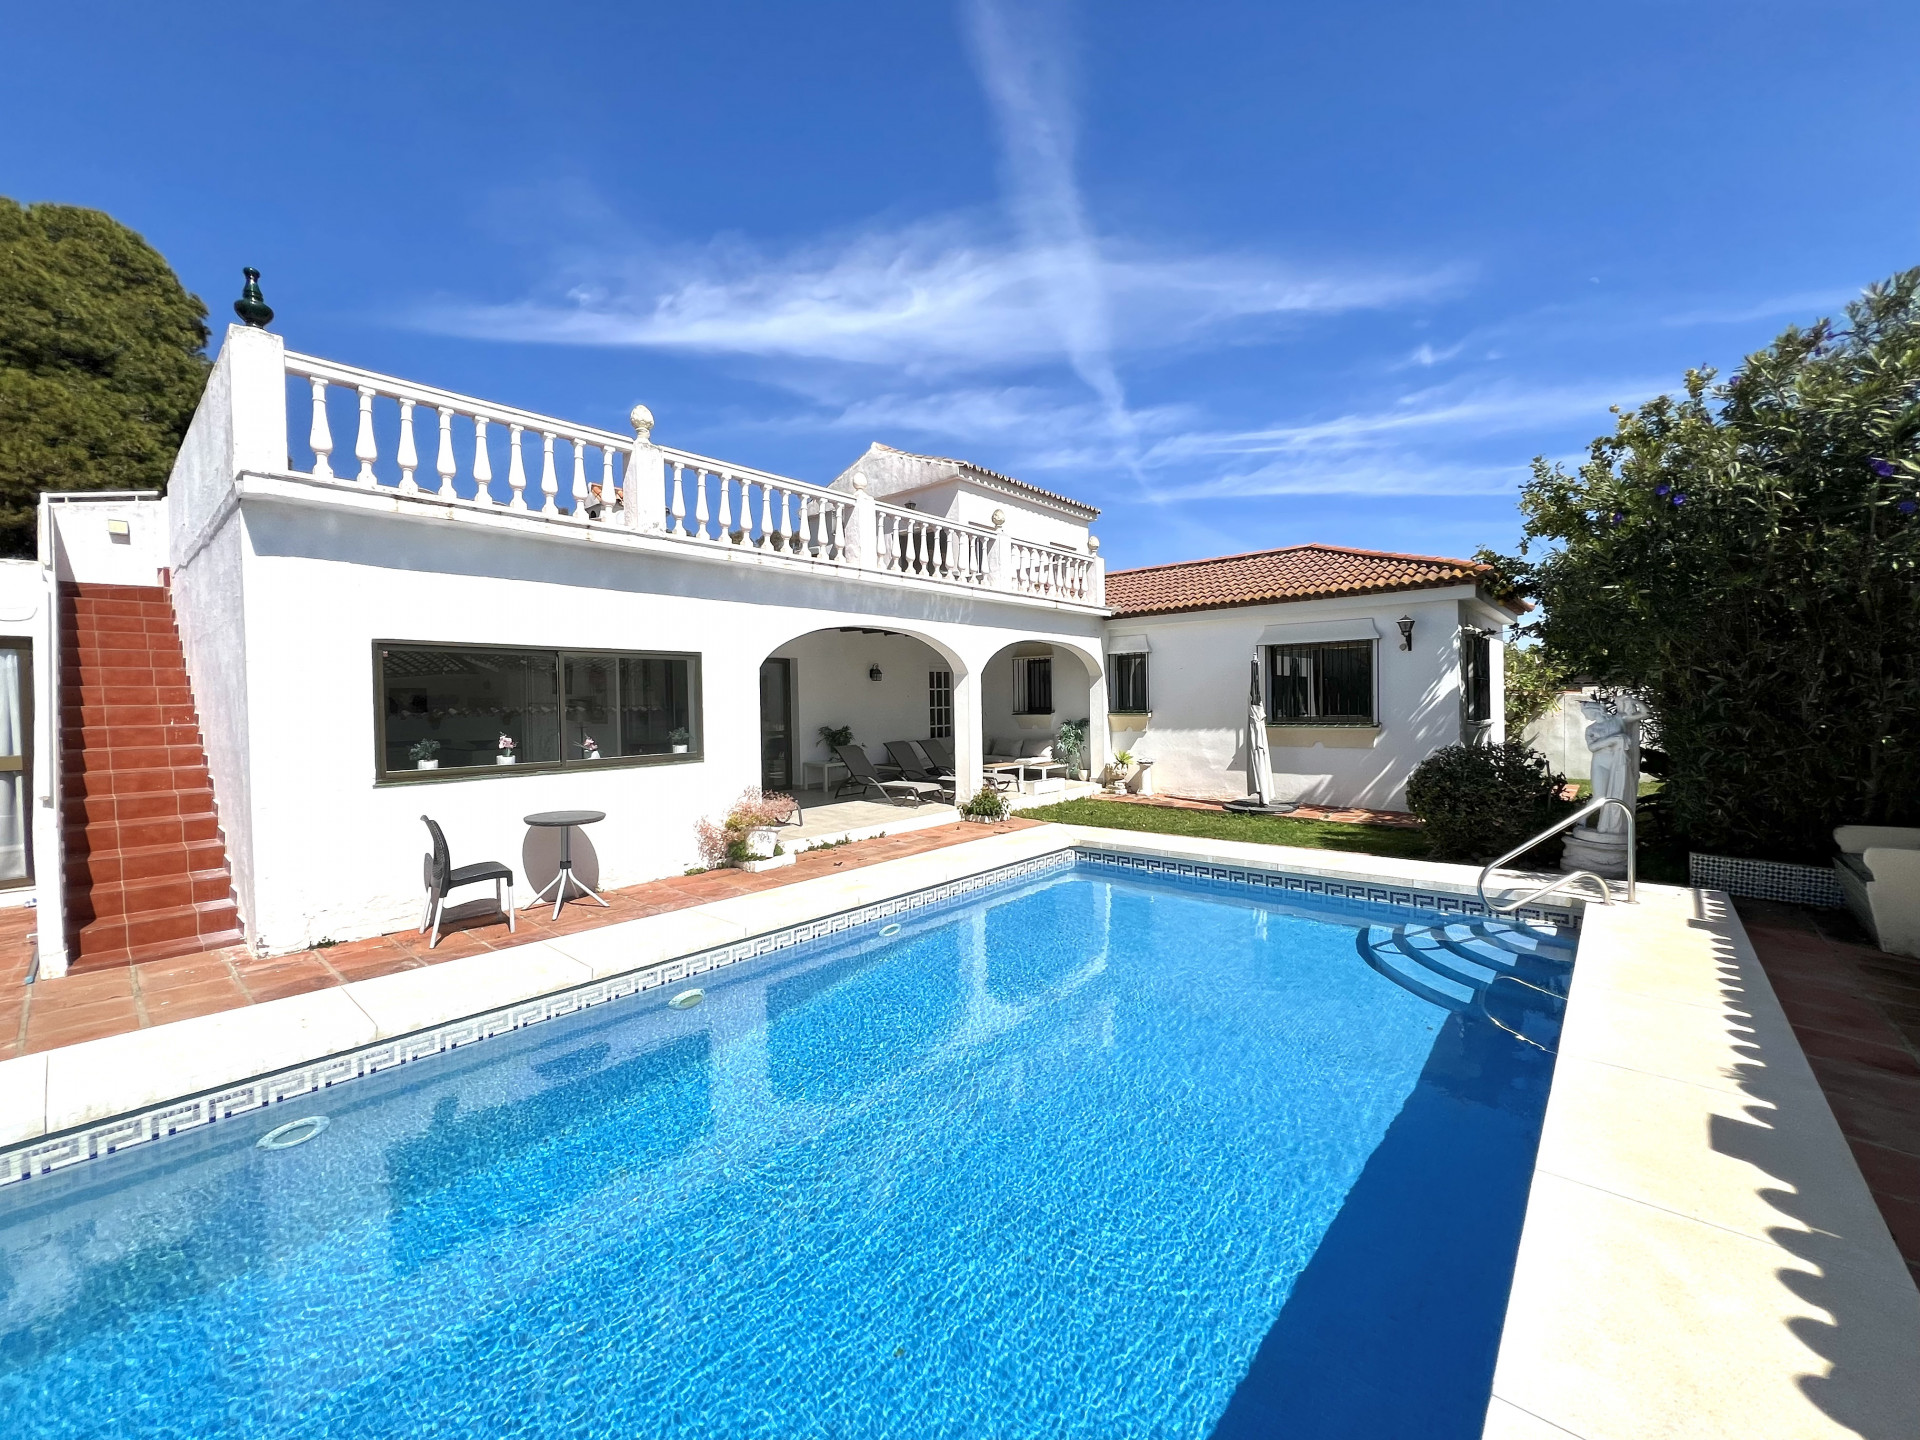 Villa de estilo andaluz muy luminosa con un fantástico solárium con vistas al mar en El Saladillo